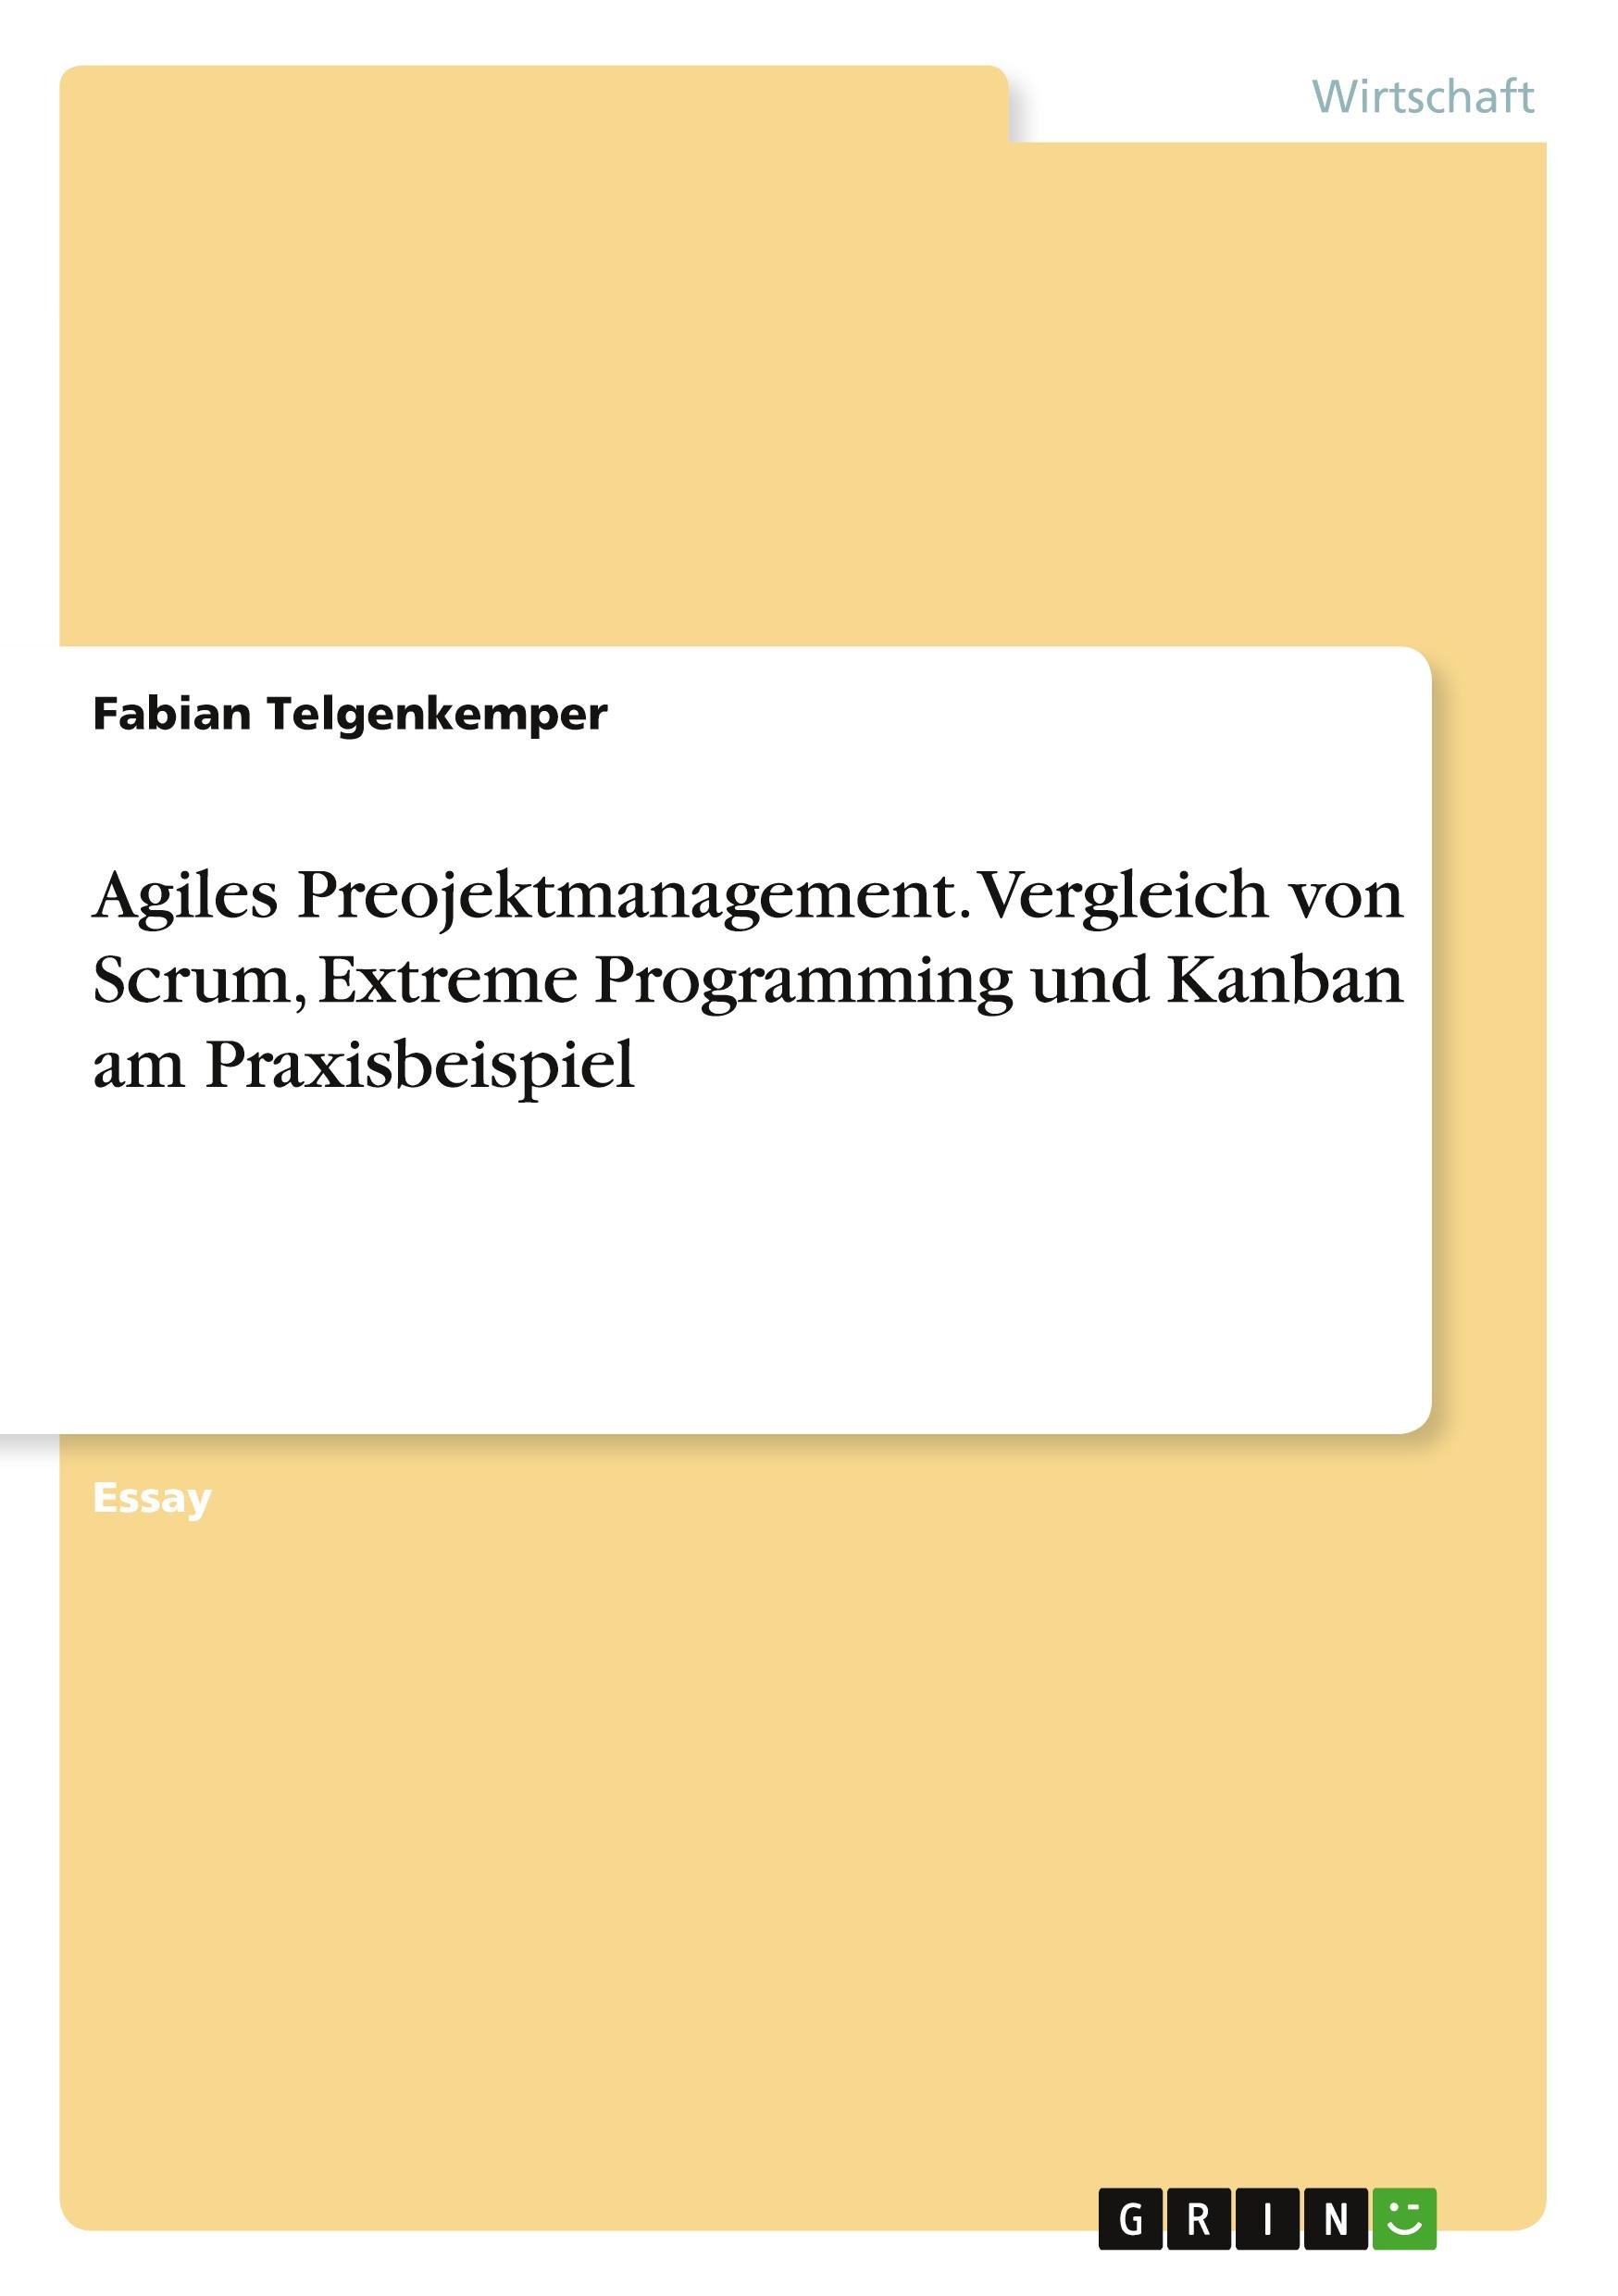 Agiles Preojektmanagement. Vergleich von Scrum, Extreme Programming und Kanban am Praxisbeispiel - Telgenkemper, Fabian